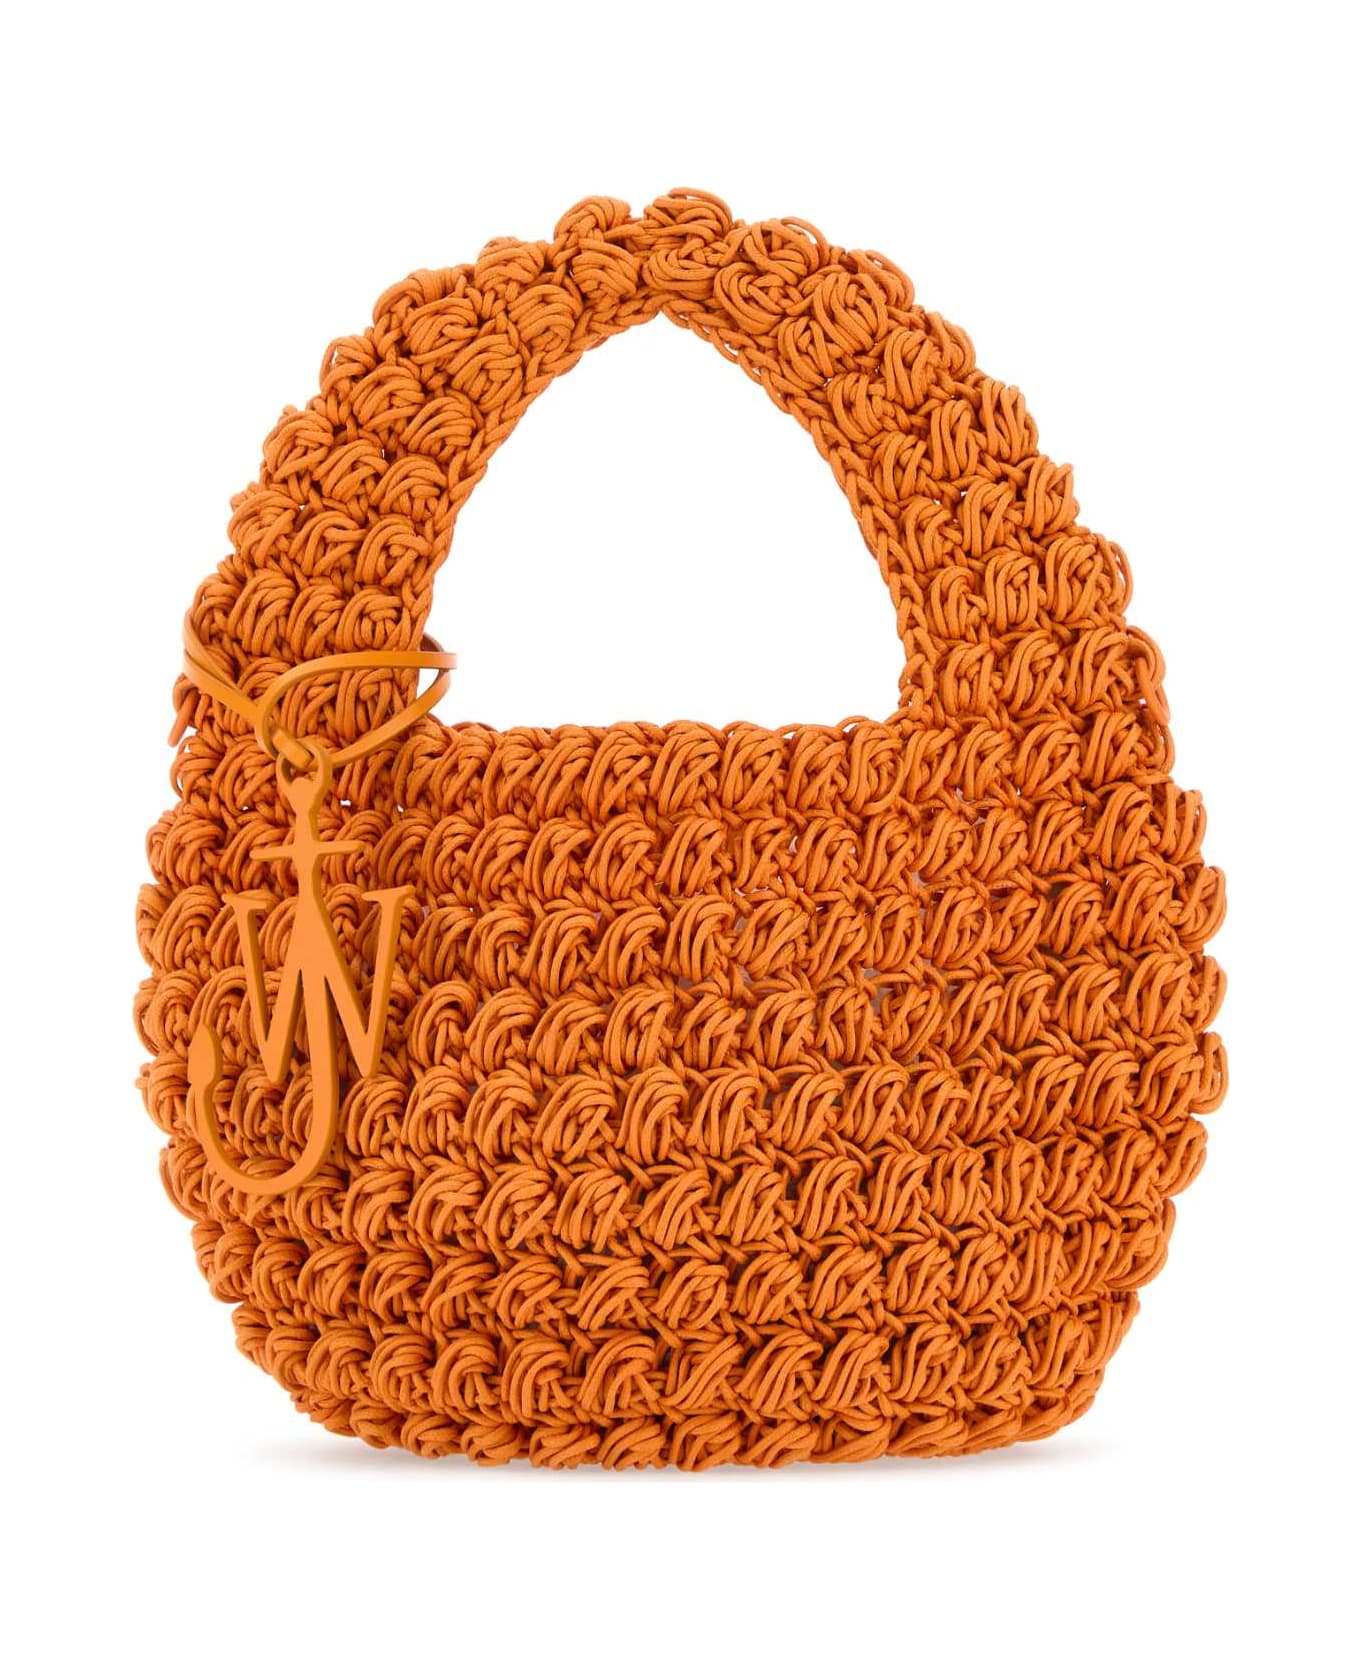 J.W. Anderson Orange Knit Popcorn Handbag - Orange